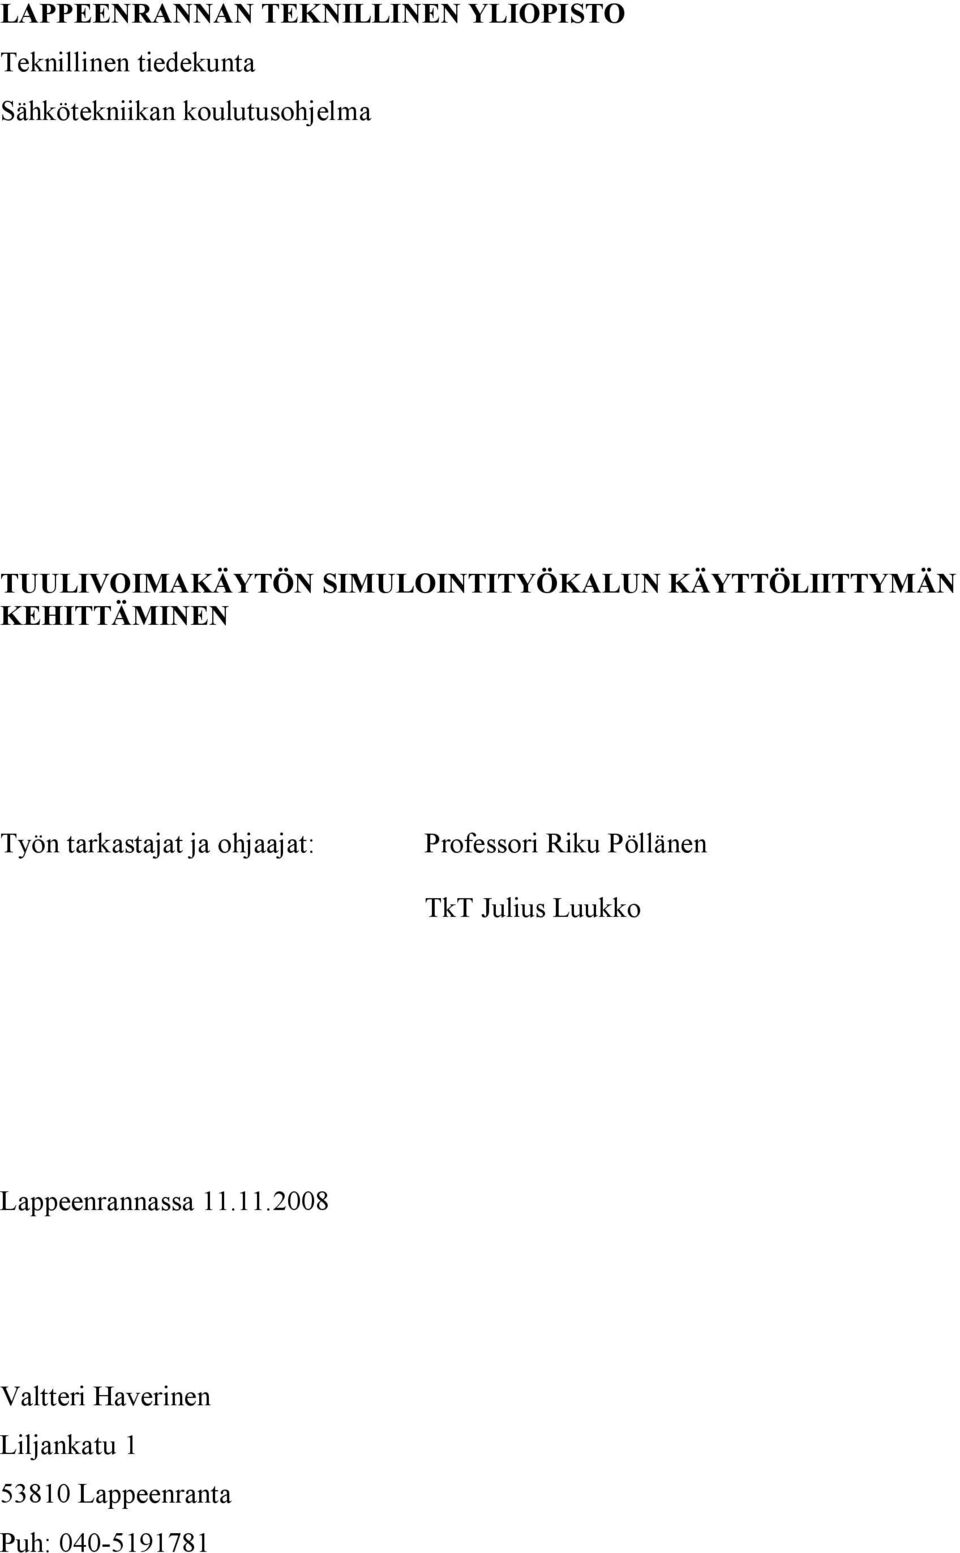 Työn tarkastajat ja ohjaajat: Professori Riku Pöllänen TkT Julius Luukko